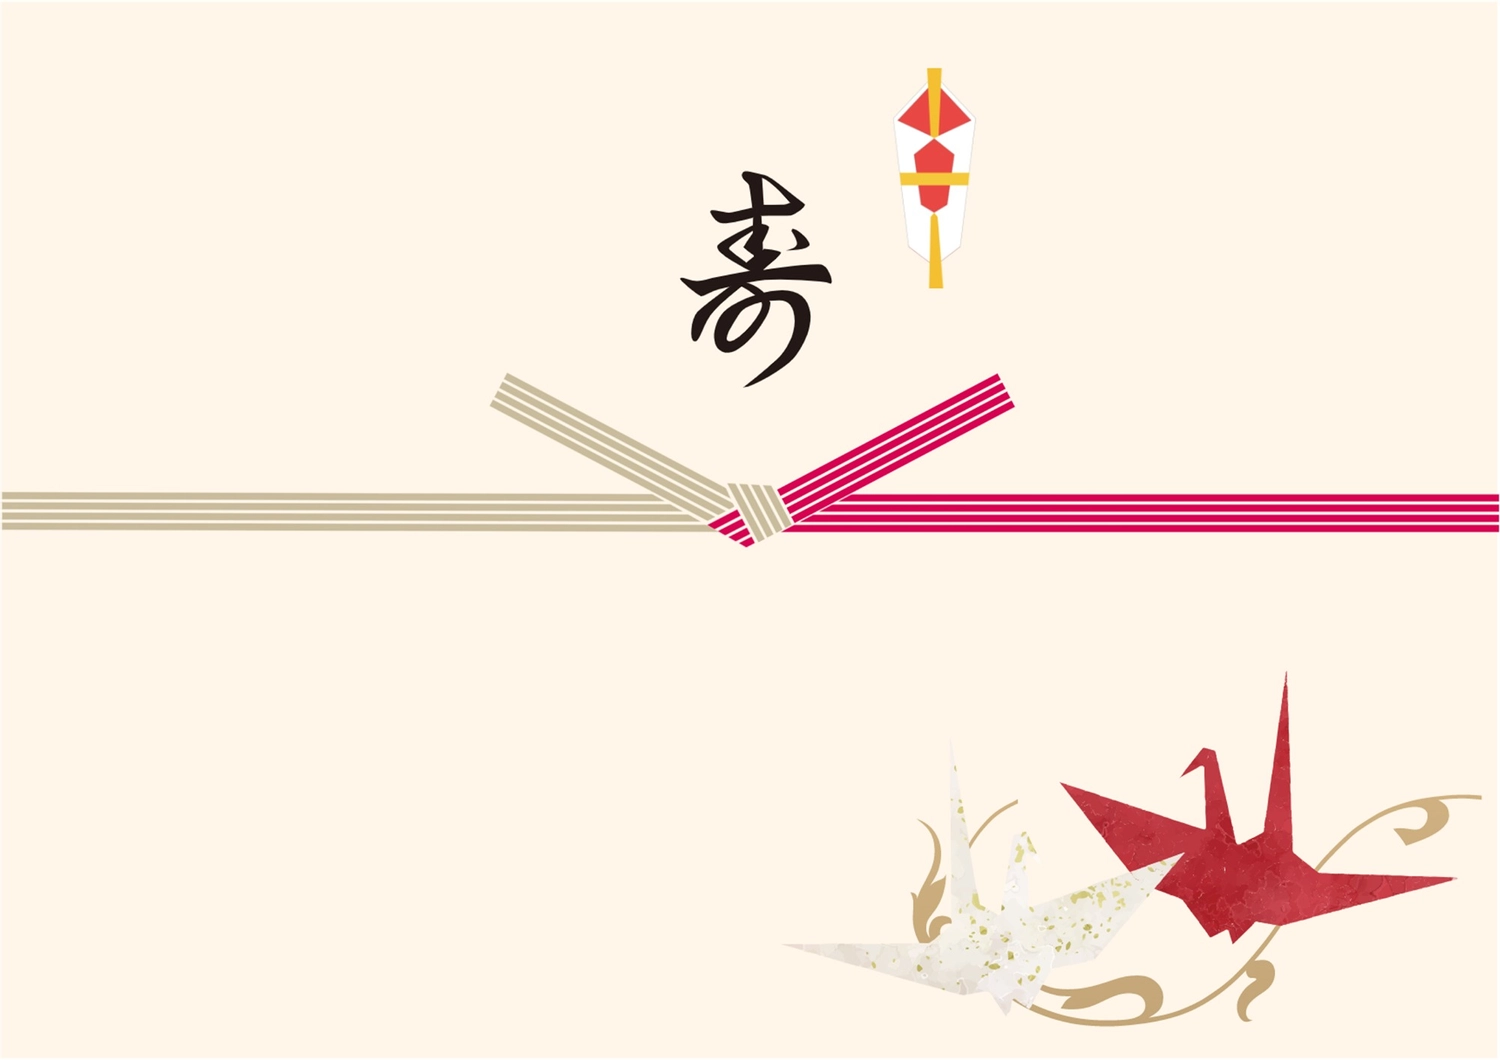 鶴が描かれた寿, 삽화, 경사, 장수, 프로모션 도구 템플릿